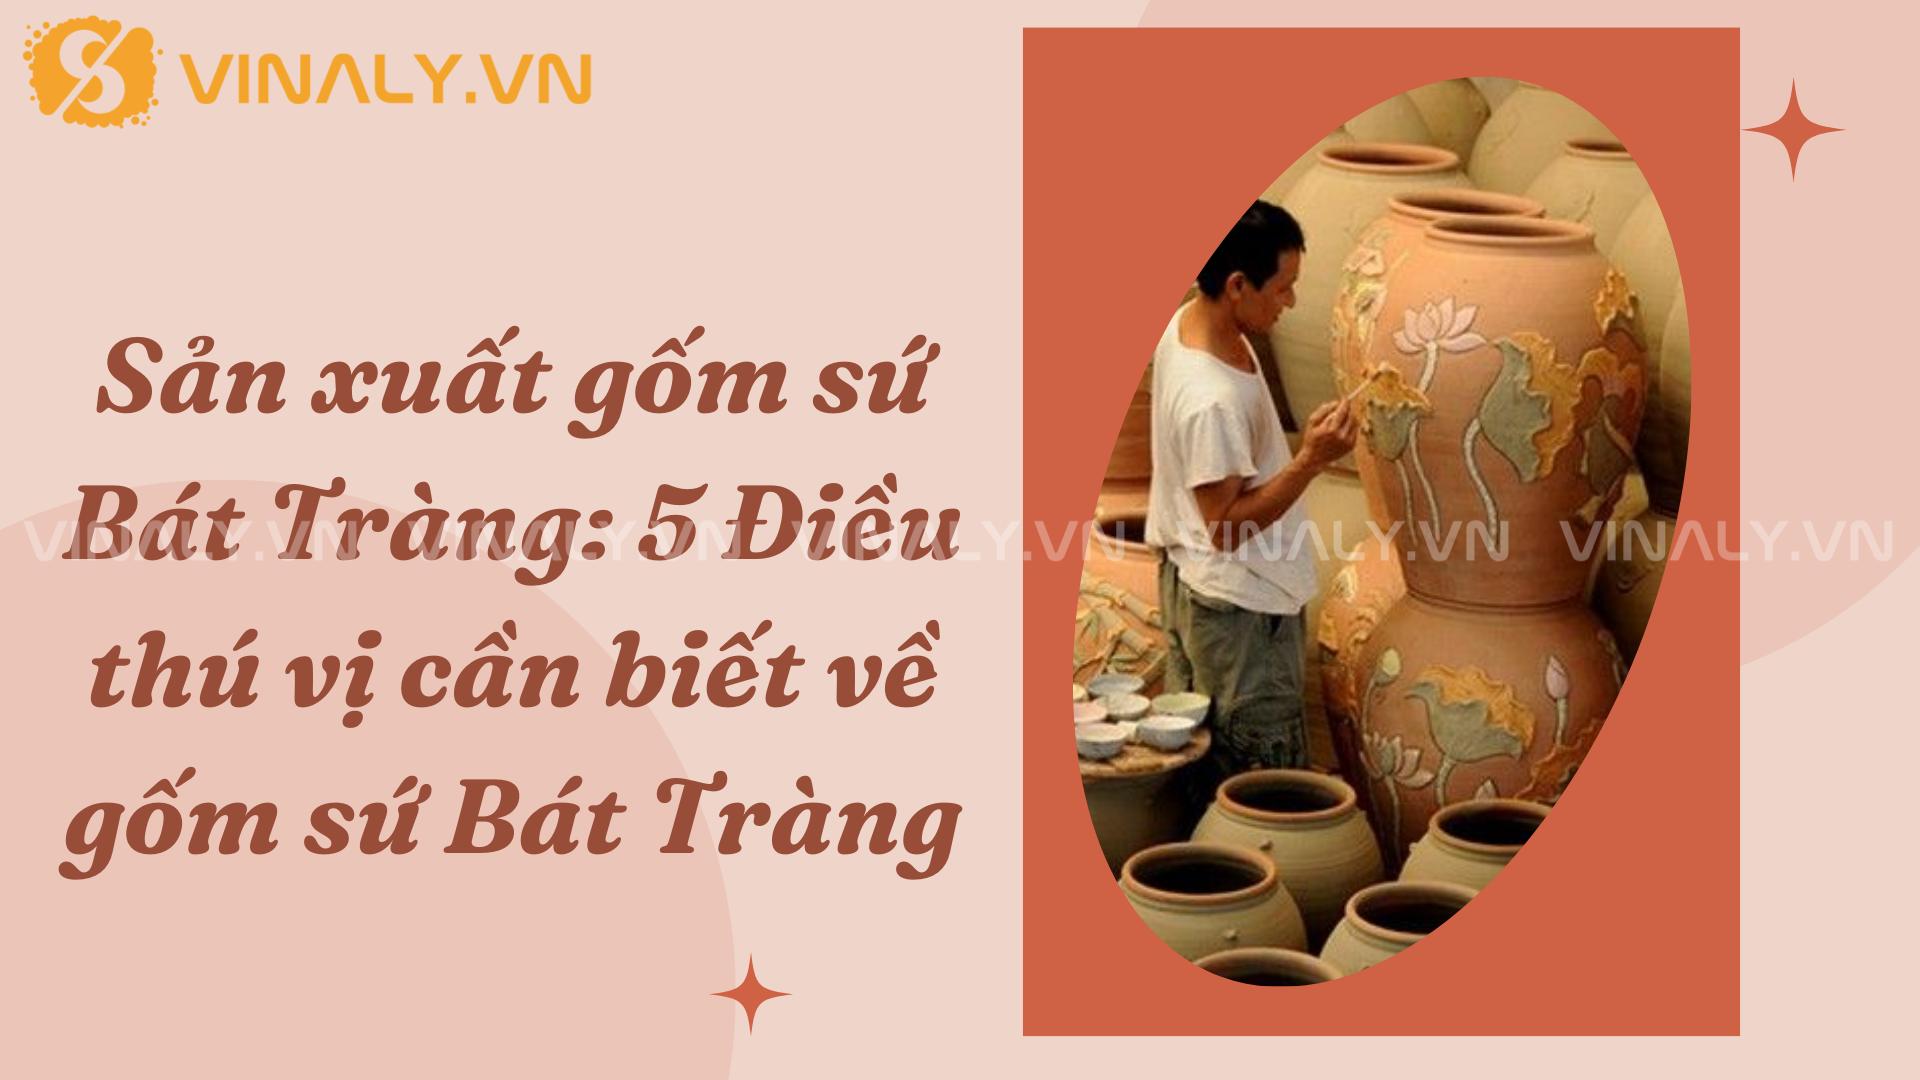 Sản xuất gốm sứ Bát Tràng: 5 Điều thú vị cần biết về gốm sứ Bát Tràng